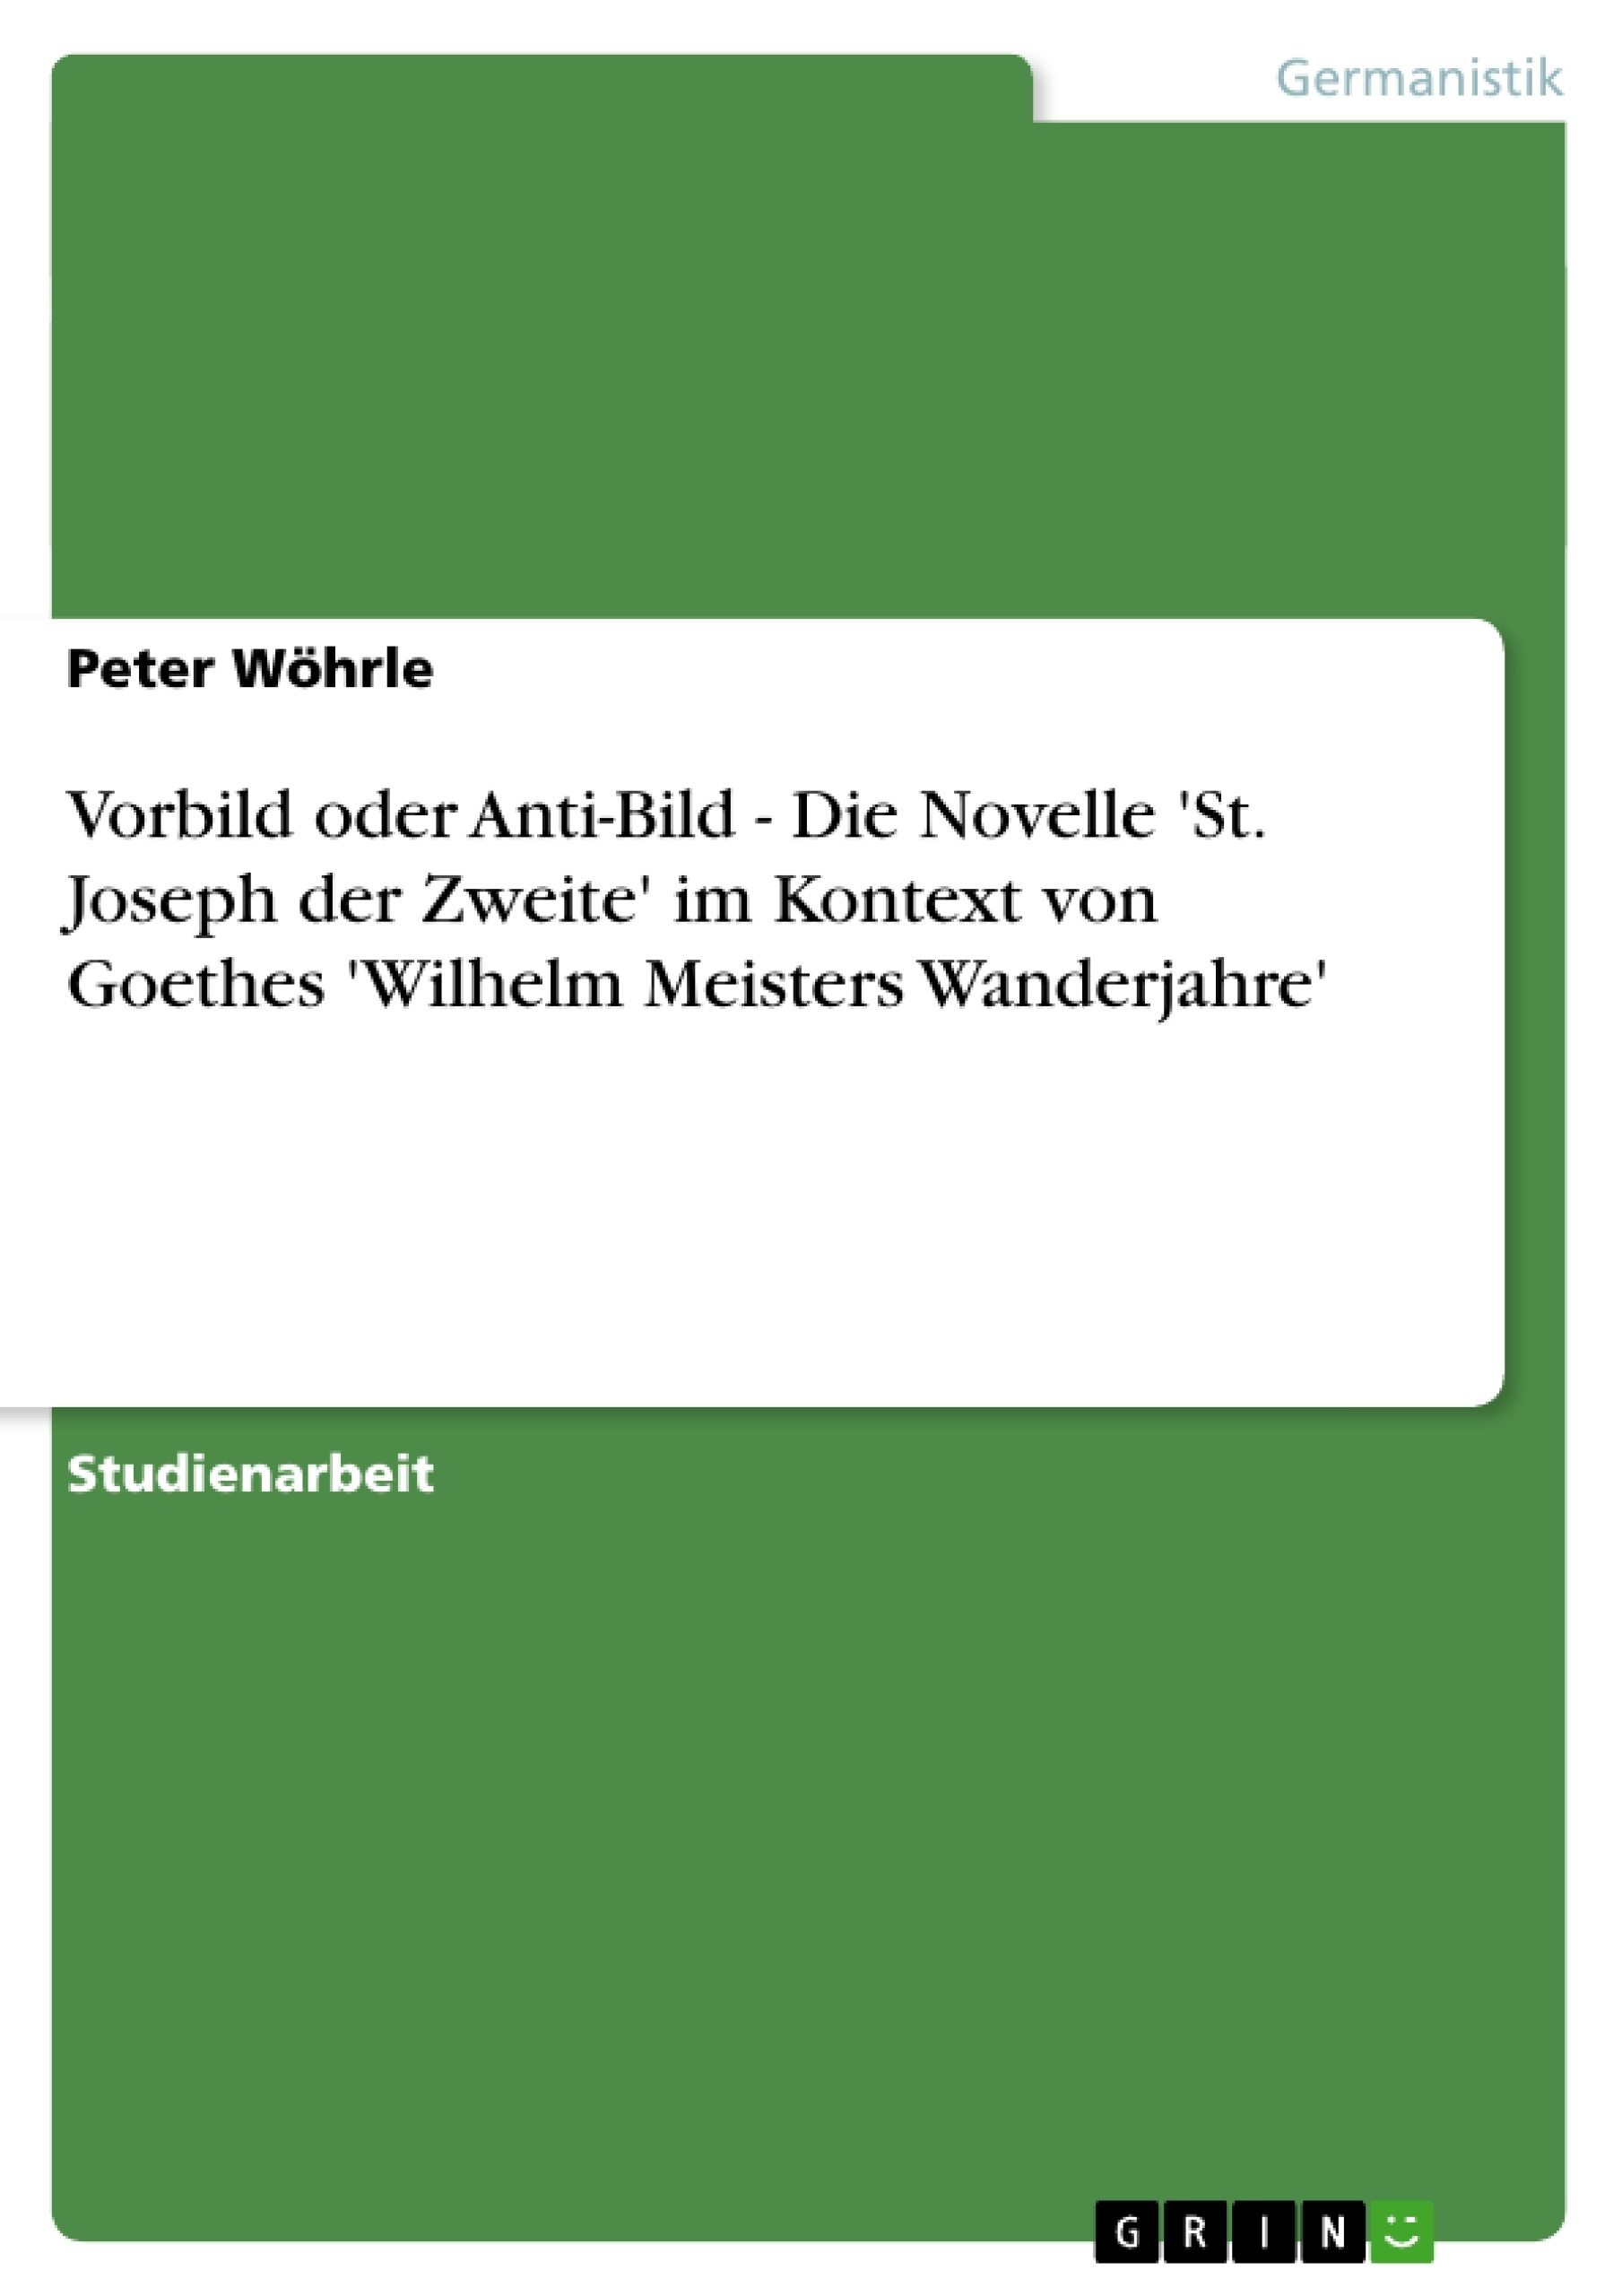 Title: Vorbild oder Anti-Bild - Die Novelle 'St. Joseph der Zweite' im Kontext von Goethes 'Wilhelm Meisters Wanderjahre'